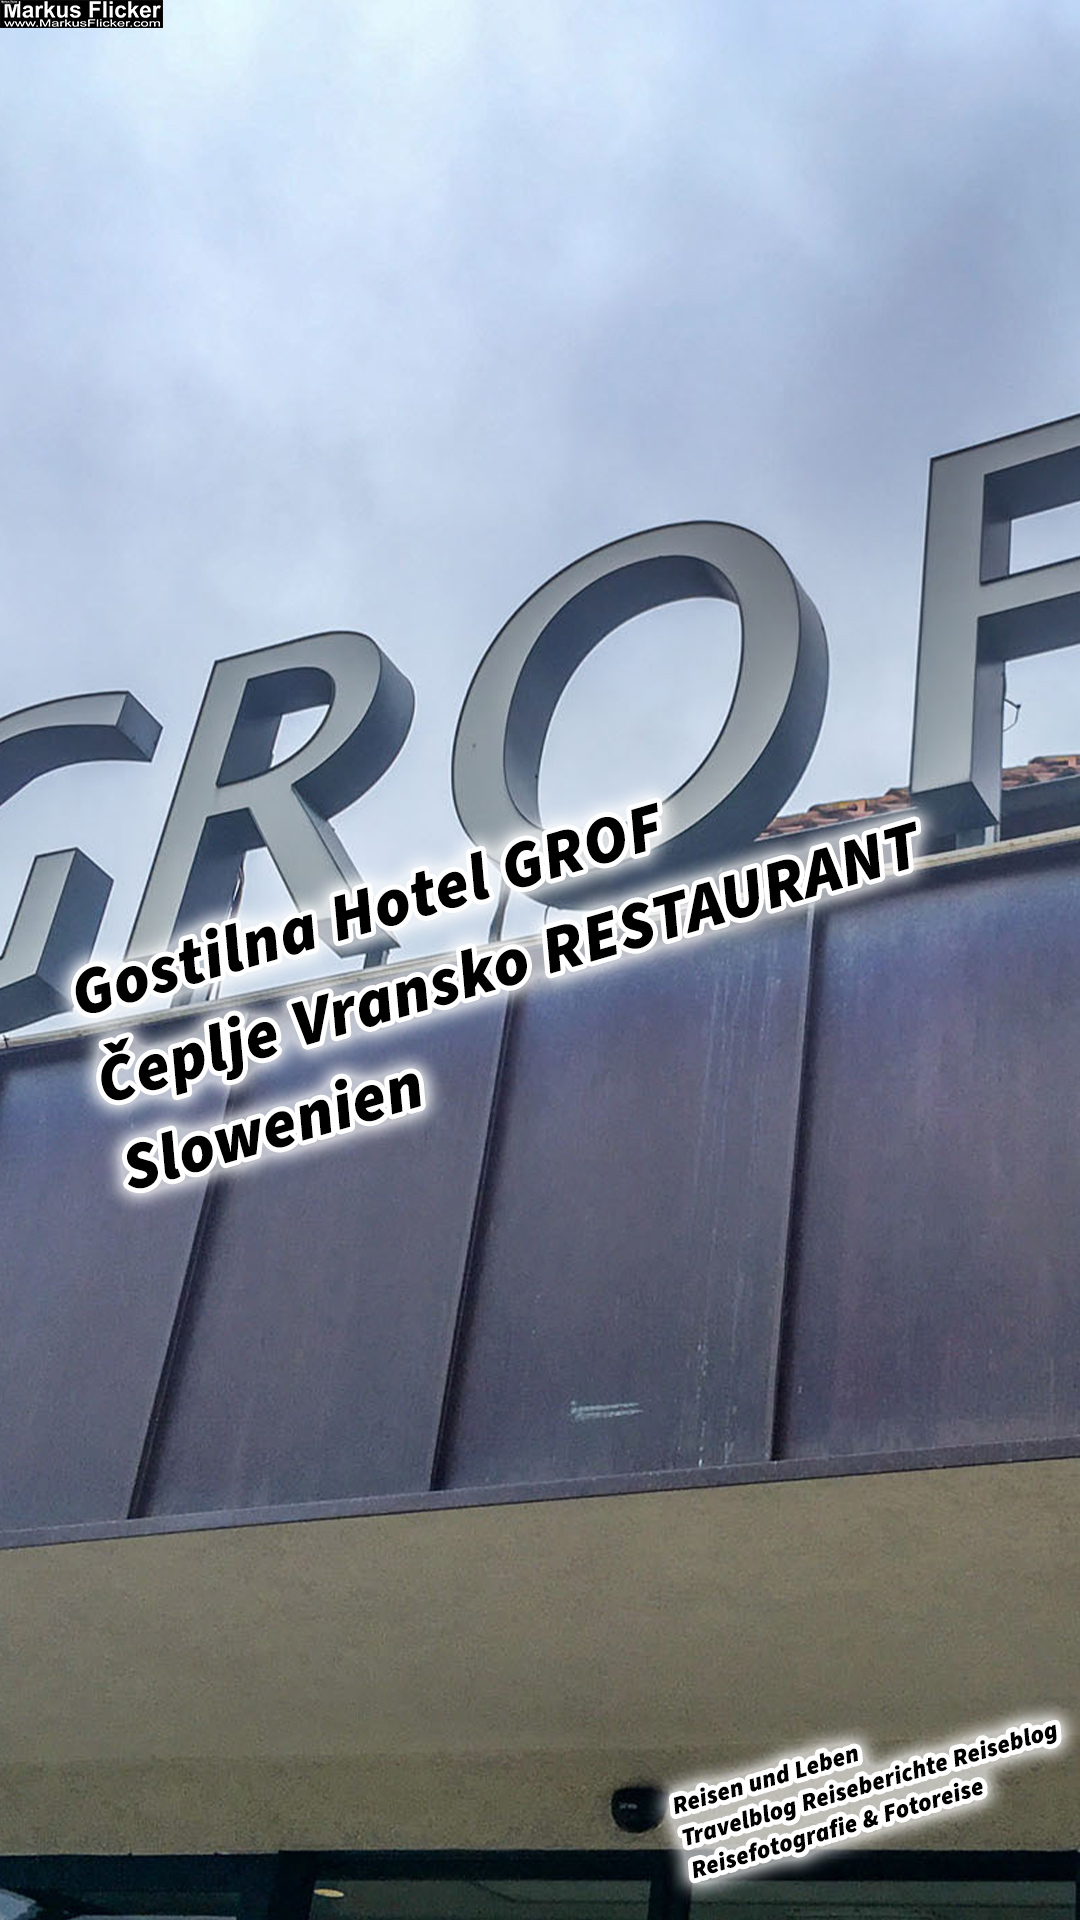 Gostilna Hotel GROF Čeplje Vransko RESTAURANT Slowenien